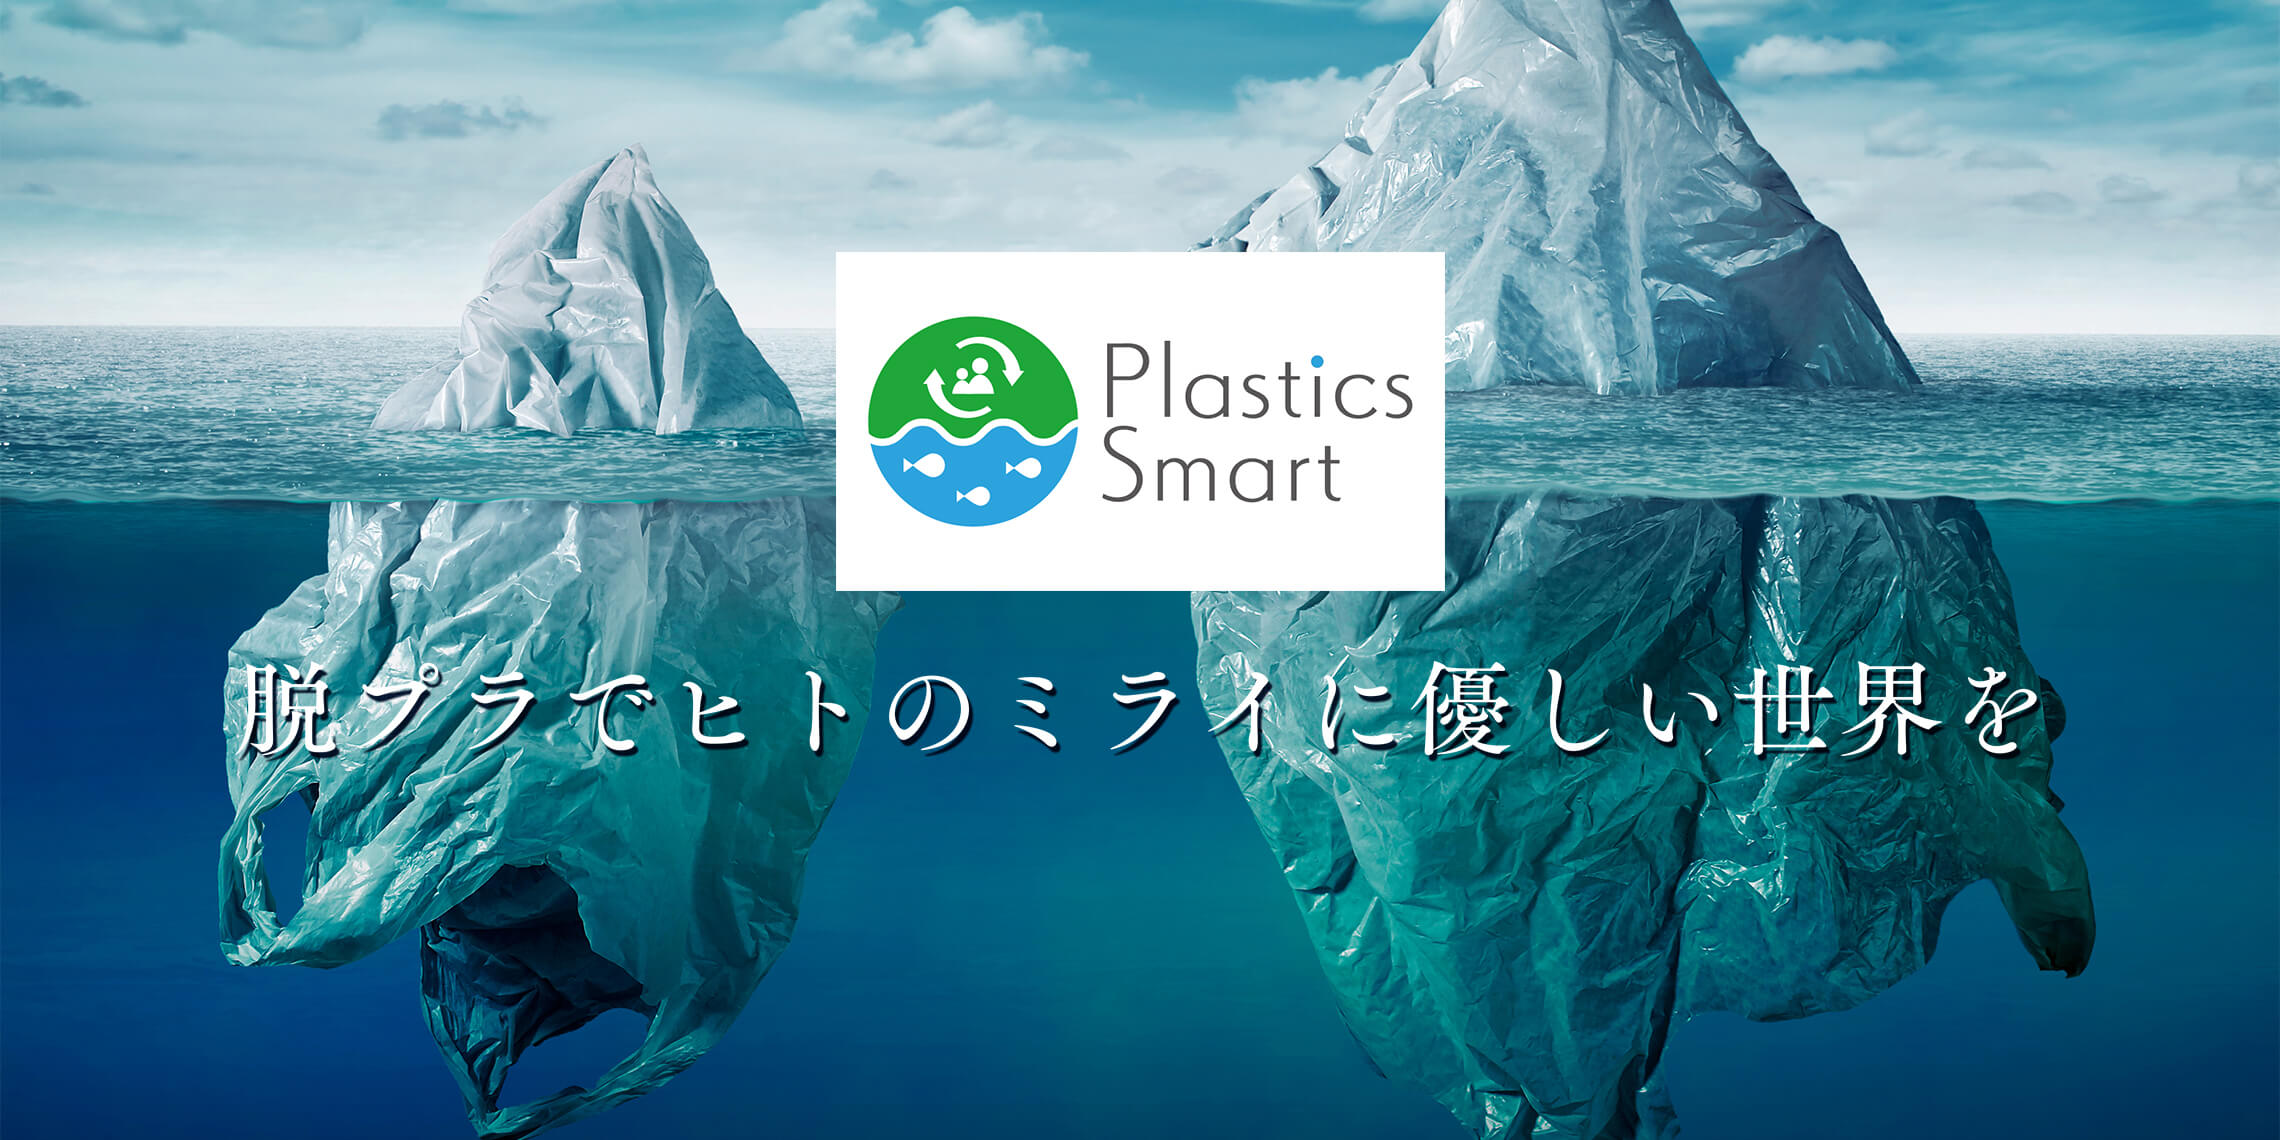 海洋プラ汚染を止めるプラスチックスマートに賛同